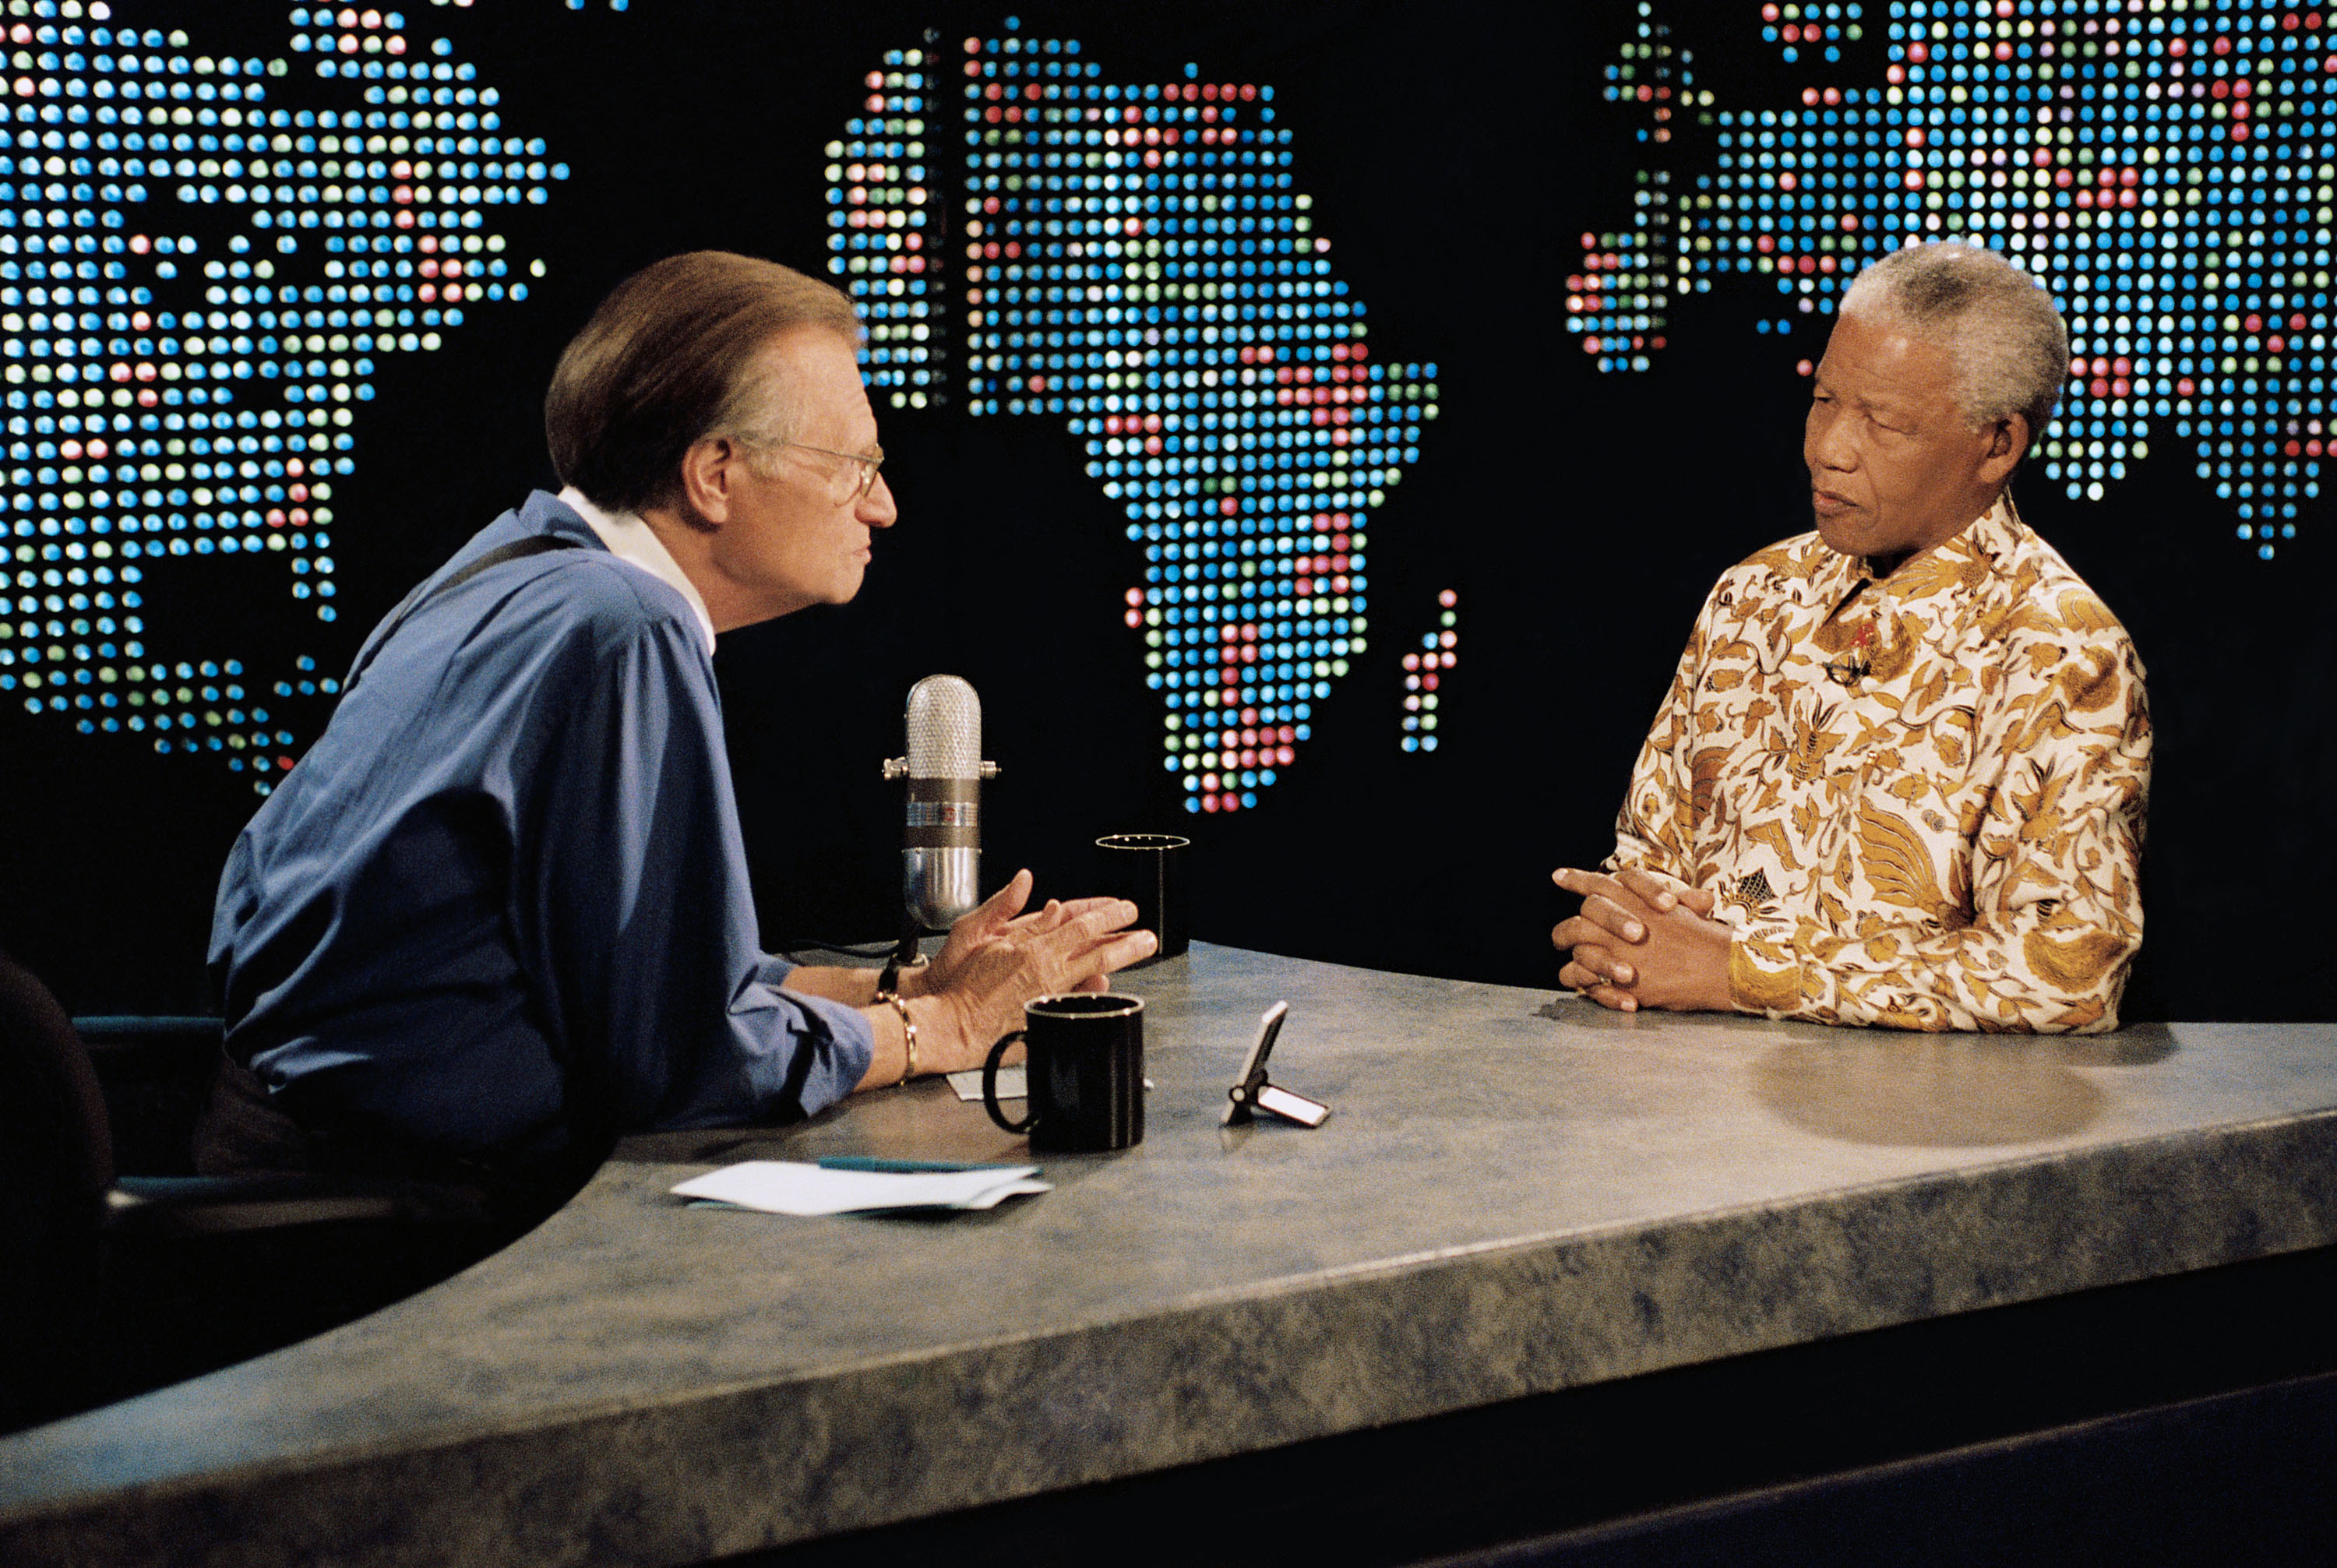 Интервью звезд на английском языке. Шоу Ларри Кинга. Ларри Кинг интервью. Ларри Кинг в прямом эфире.